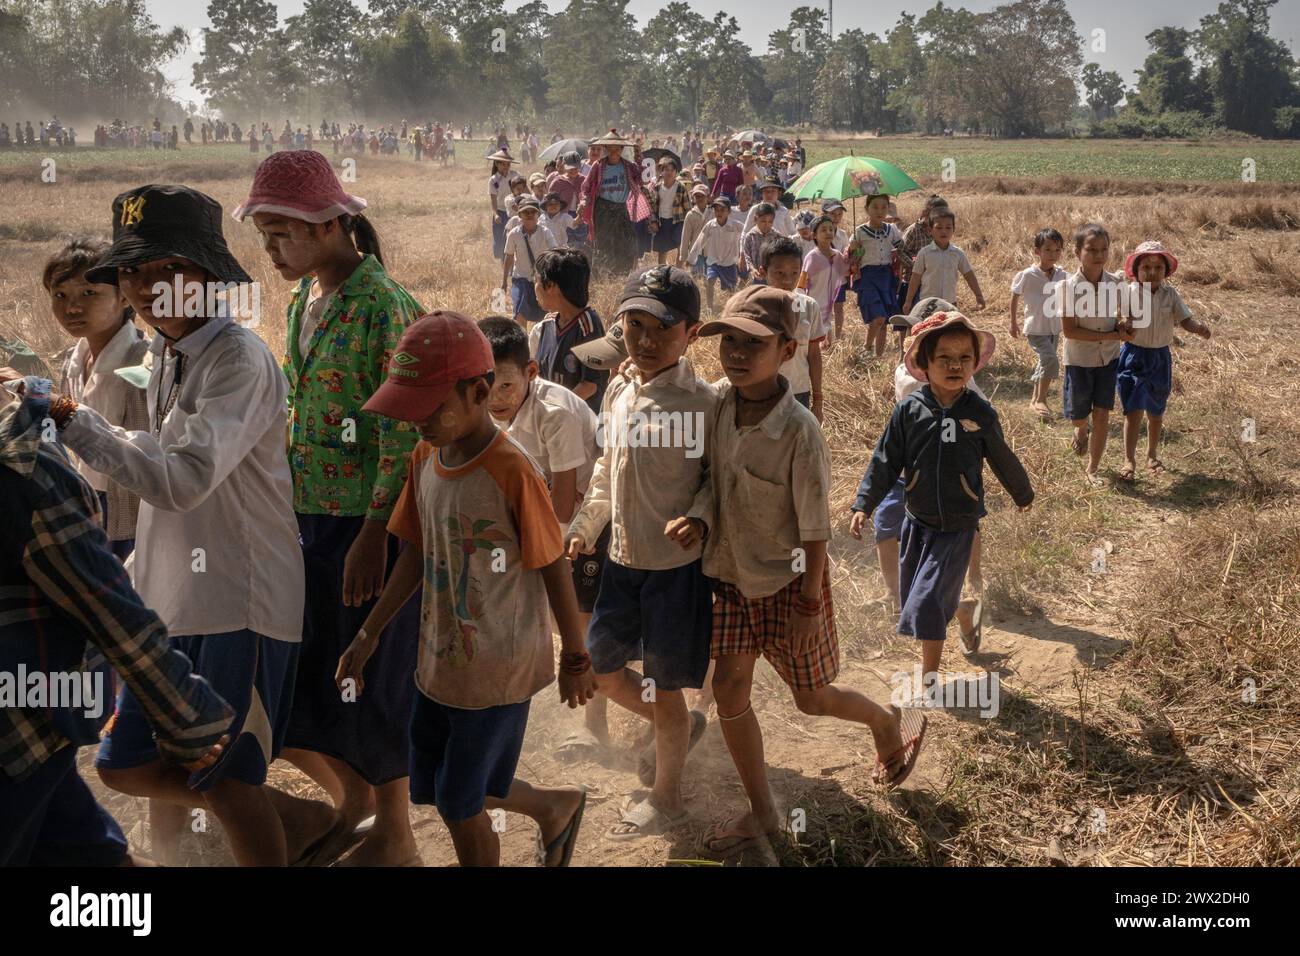 © Chris Huby/le Pictorium/MAXPPP - 09/01/2024 Chris Huby/le Pictorium - 09/01/2024 - Birmanie/Karen (regione) - A un point securise de la plaine, les Deplaces des Villages alentours viennent a la rencontre des FBR. Des Campements de refugies aux Villages bombardes, rencontre avec une population martyrisee par la junte et decouverte de l'action humanitaire des FBR. La Birmanie continue sa descente aux enfers depuis trois ans, dans une indifference quasi totale, et il est important de rapporter l'engagement des FBR aupres de ce peuple qui compte Plus que jamais sur l'opinion publi Foto Stock